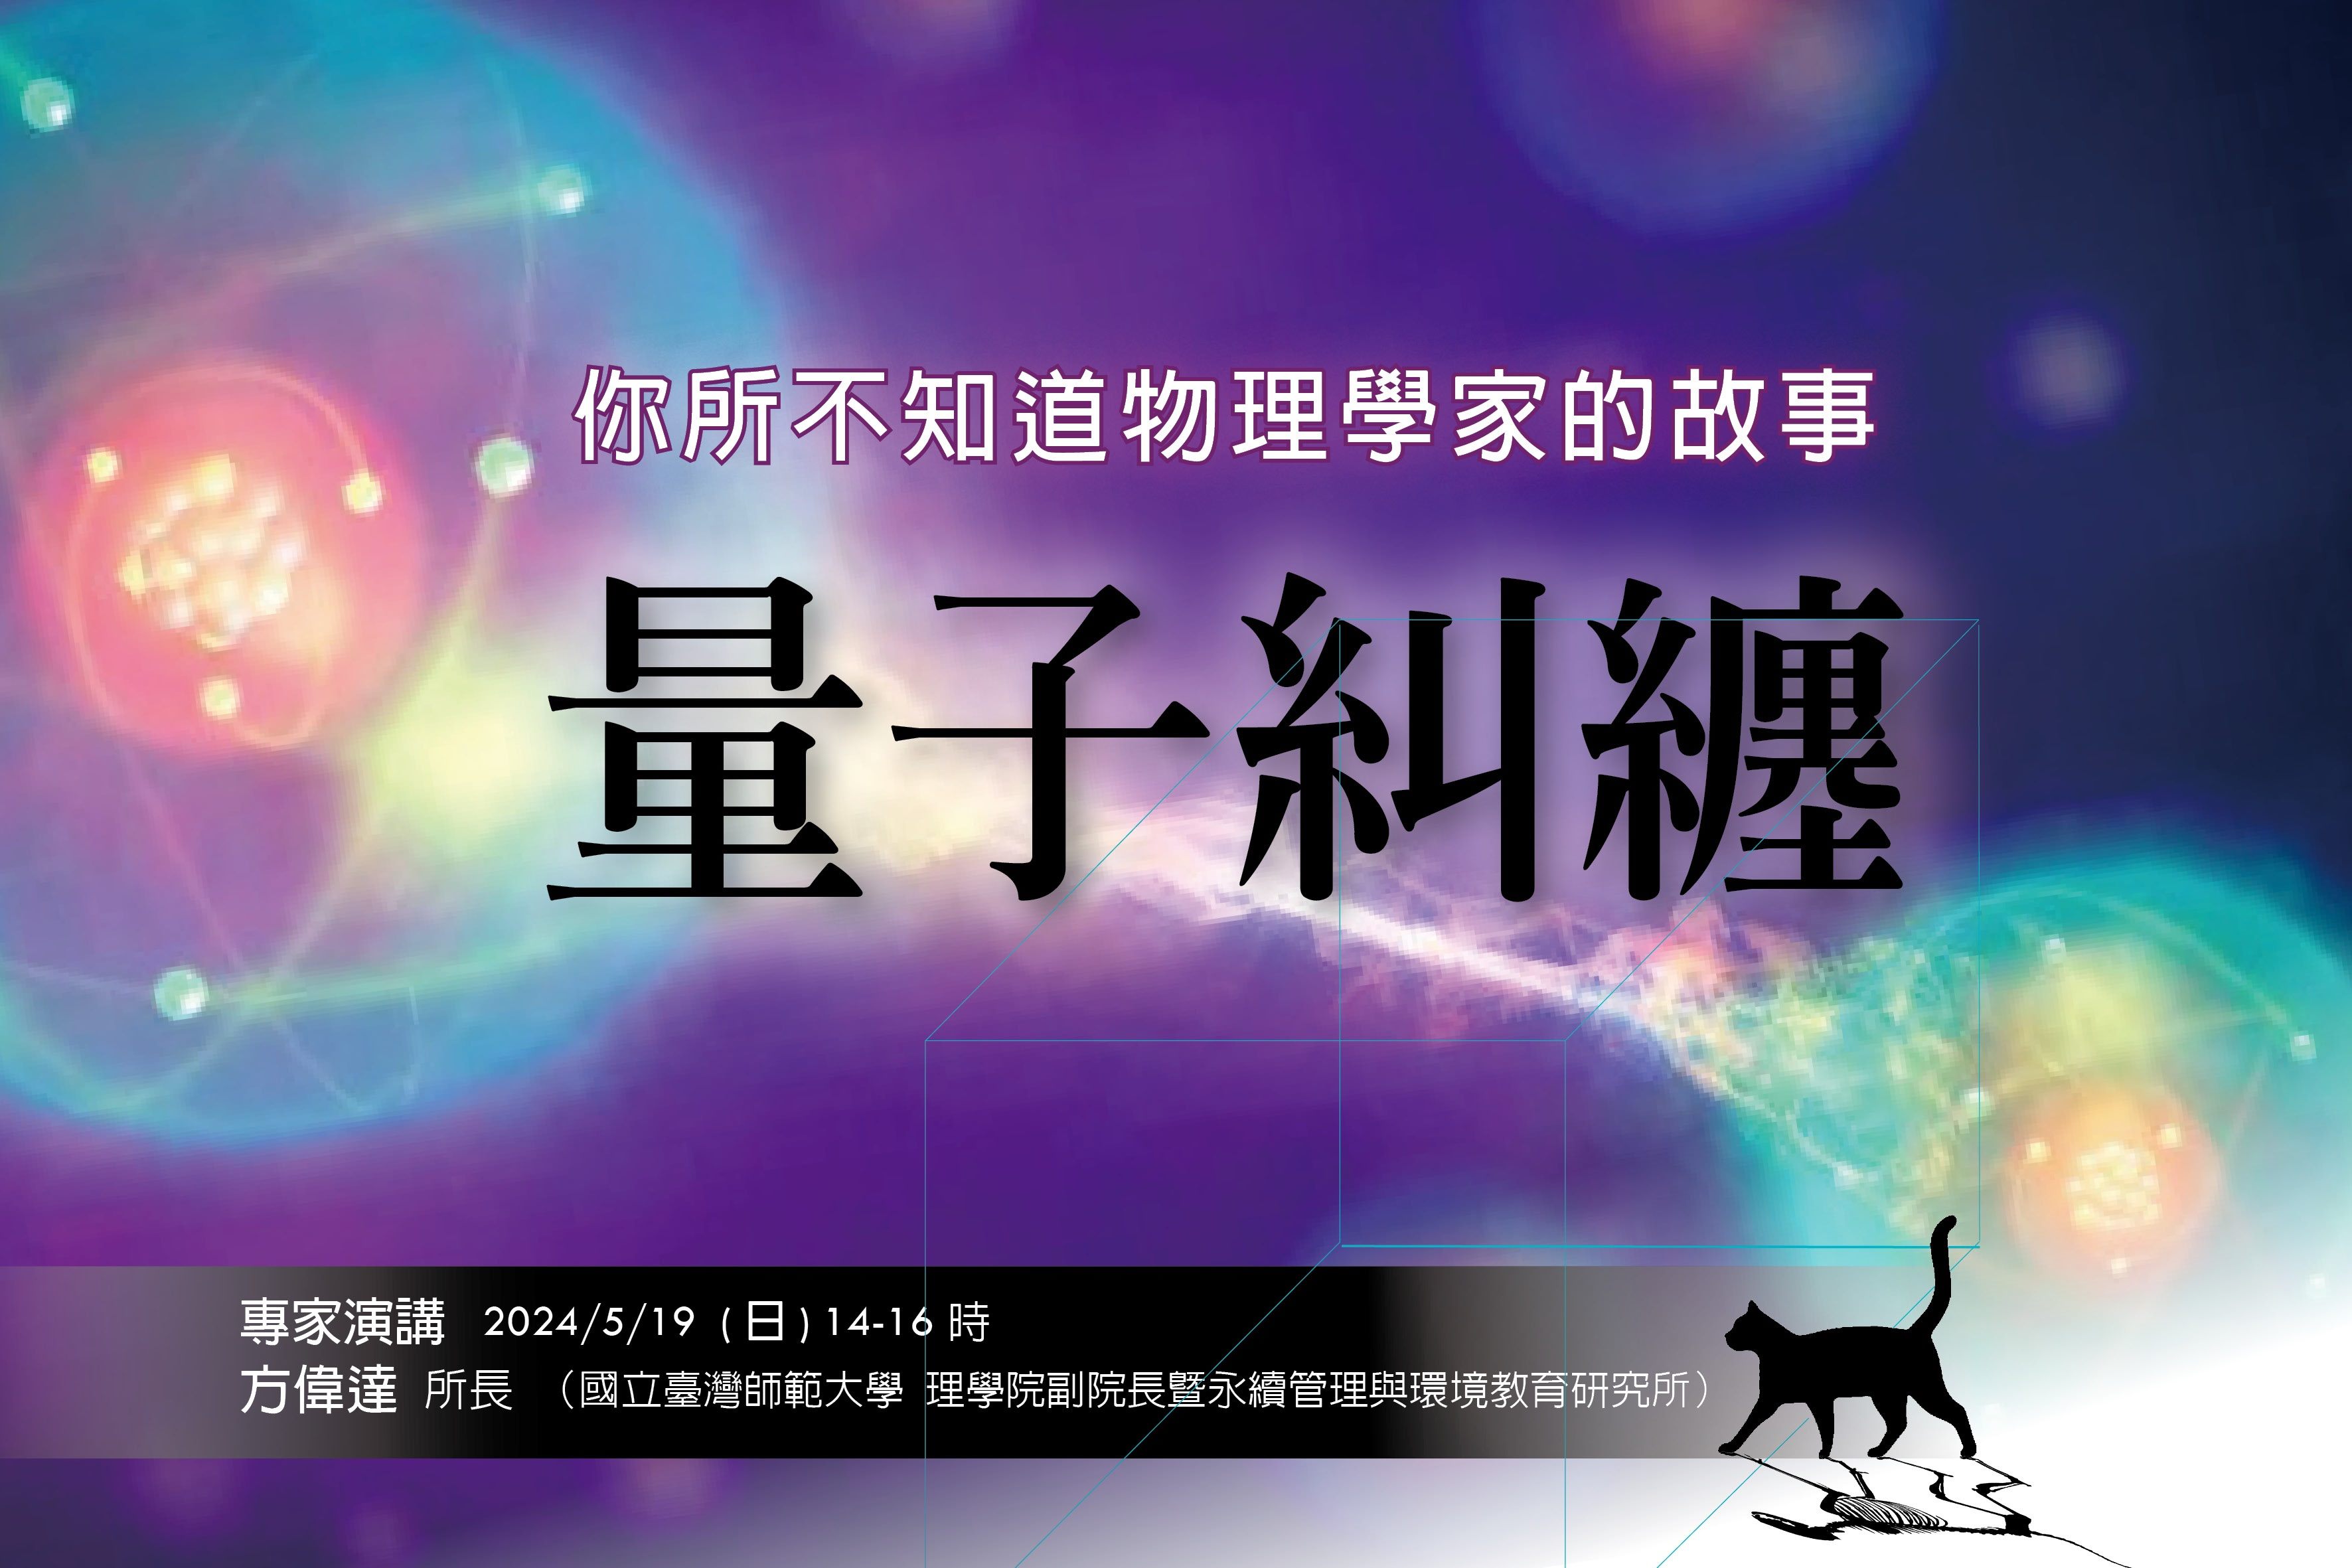 臺北天文館講座  帶您進入量子物理的奇幻世界！...